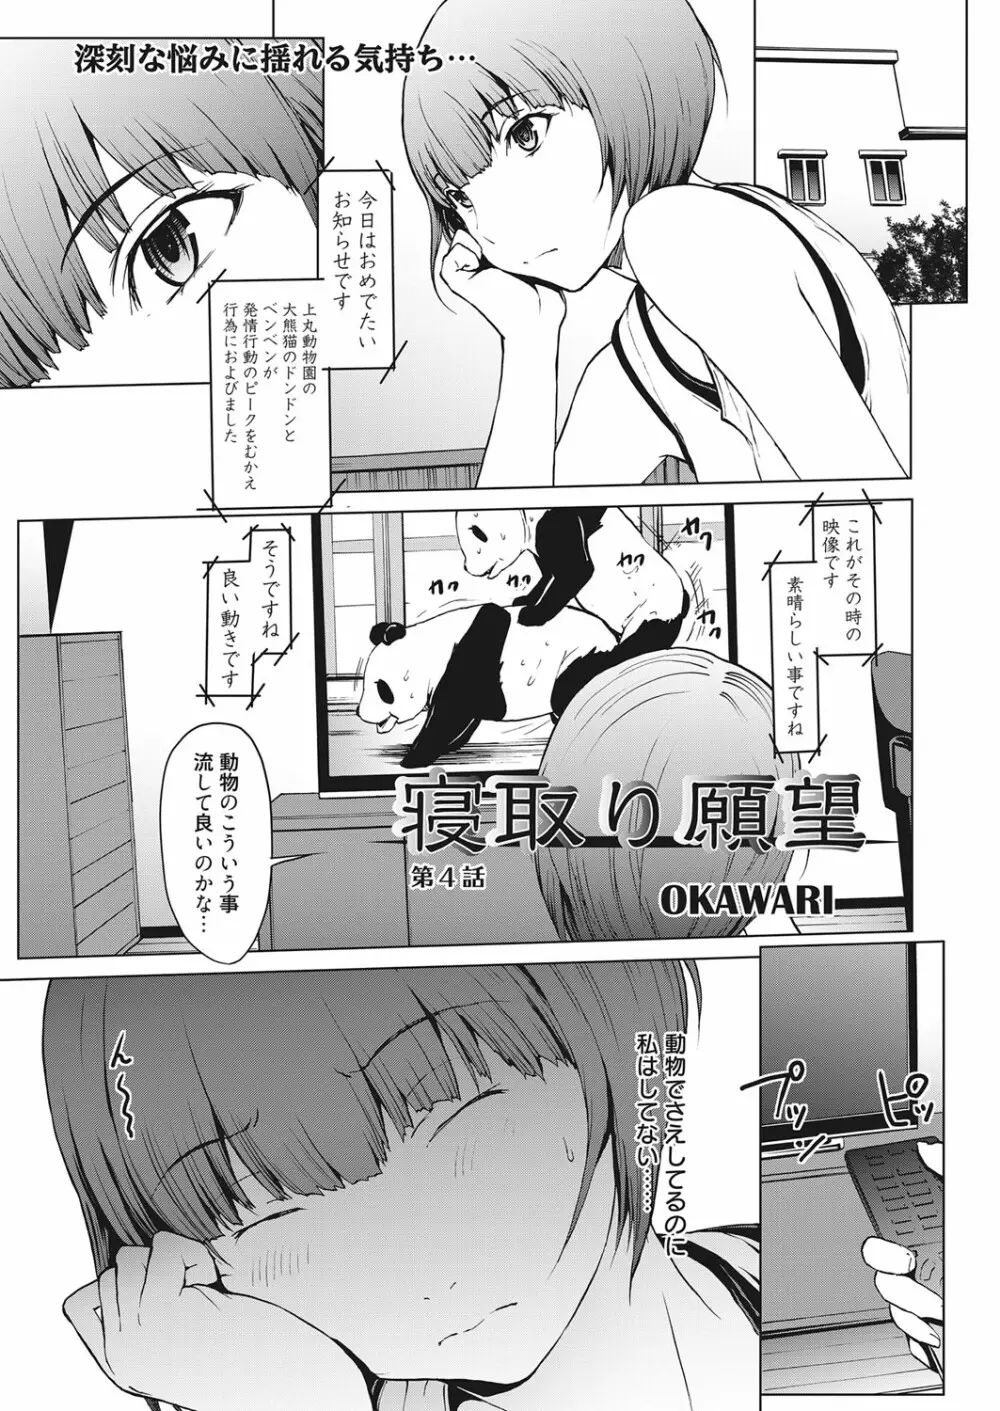 web 漫画ばんがいち Vol.14 18ページ